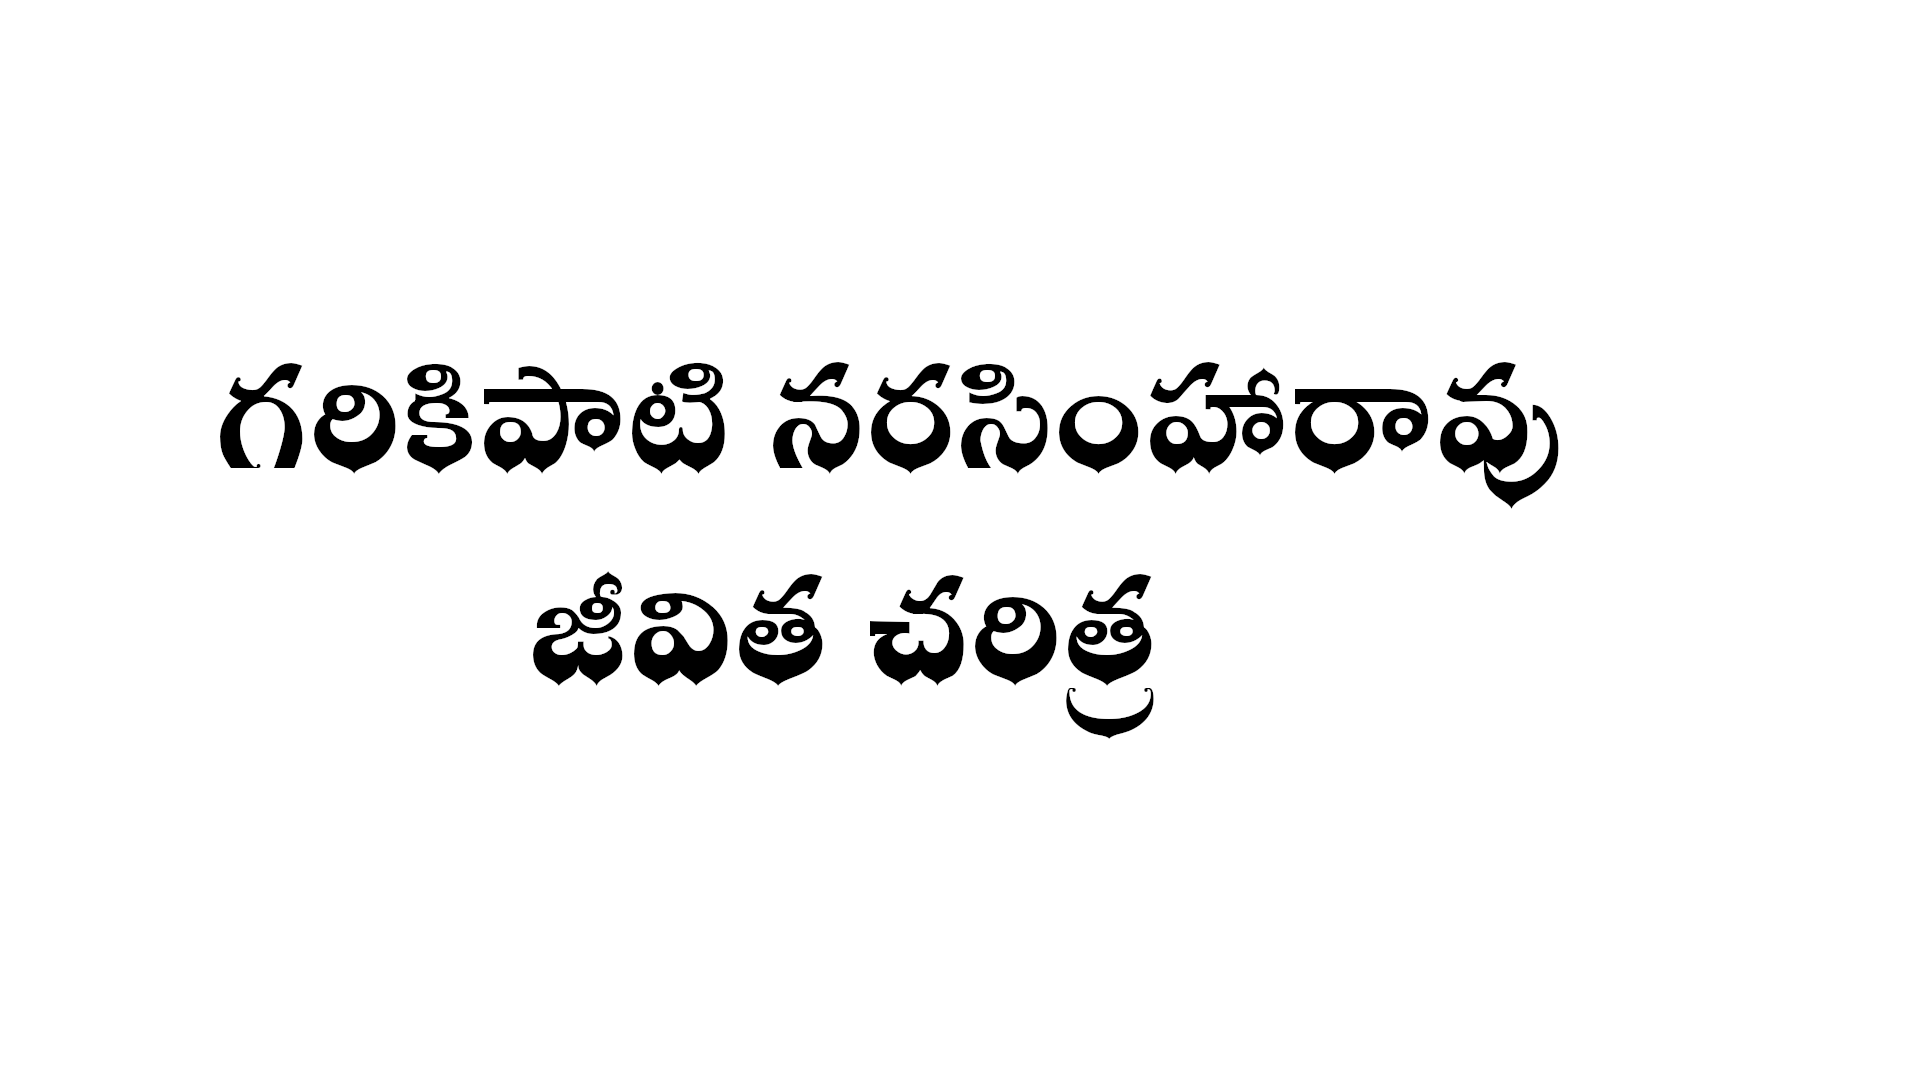 గరికిపాటి నరసింహారావు జీవిత చరిత్ర - Garikapati Narasimha Rao biography in Telugu